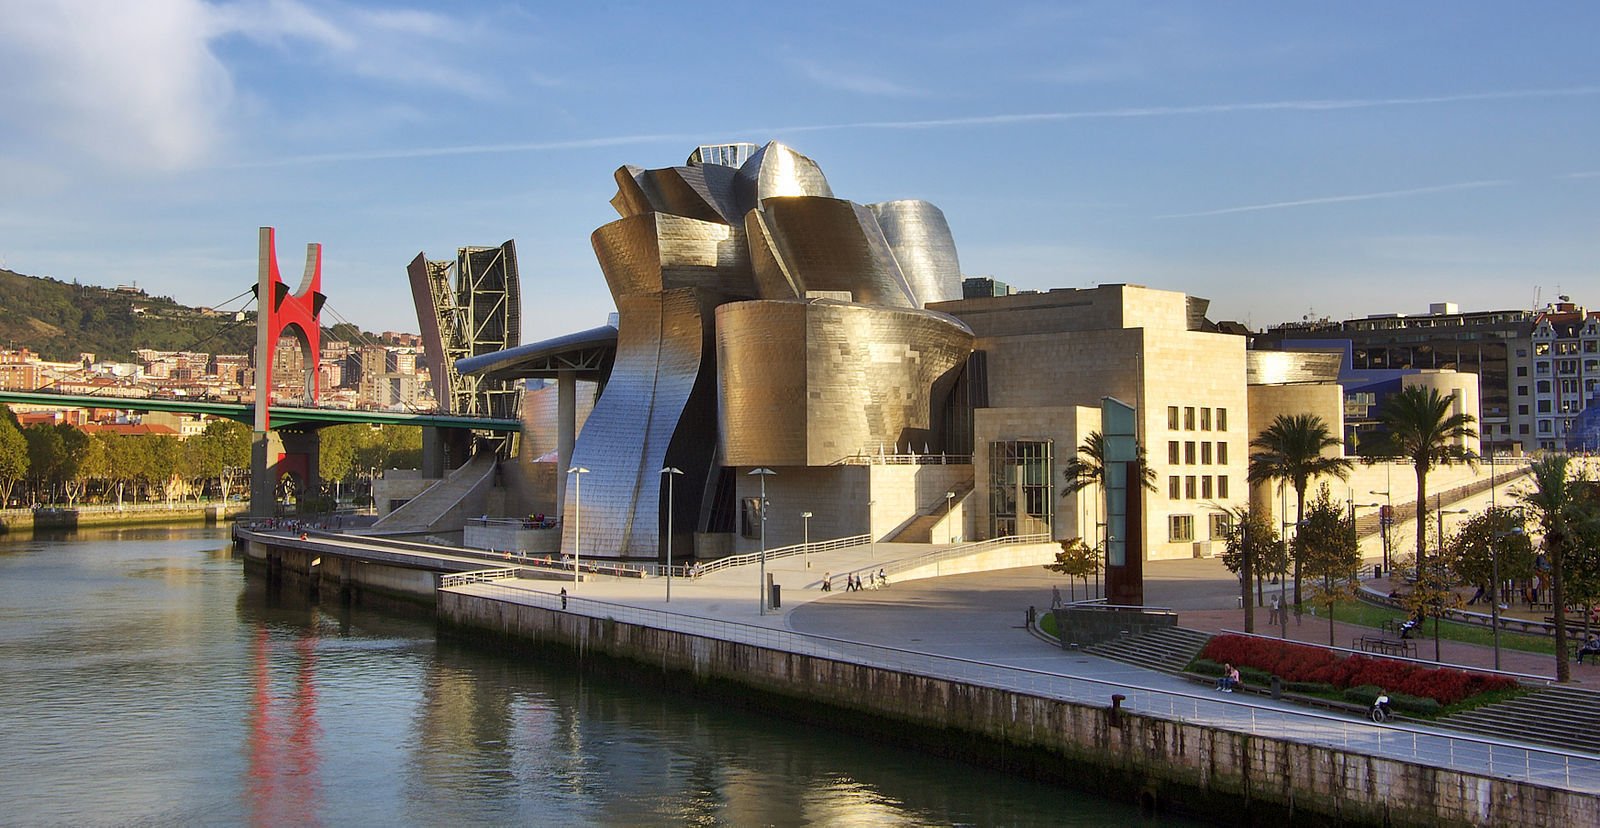 Image of the Guggenheim museum Bilbao, Phillip Maiwald, 2009